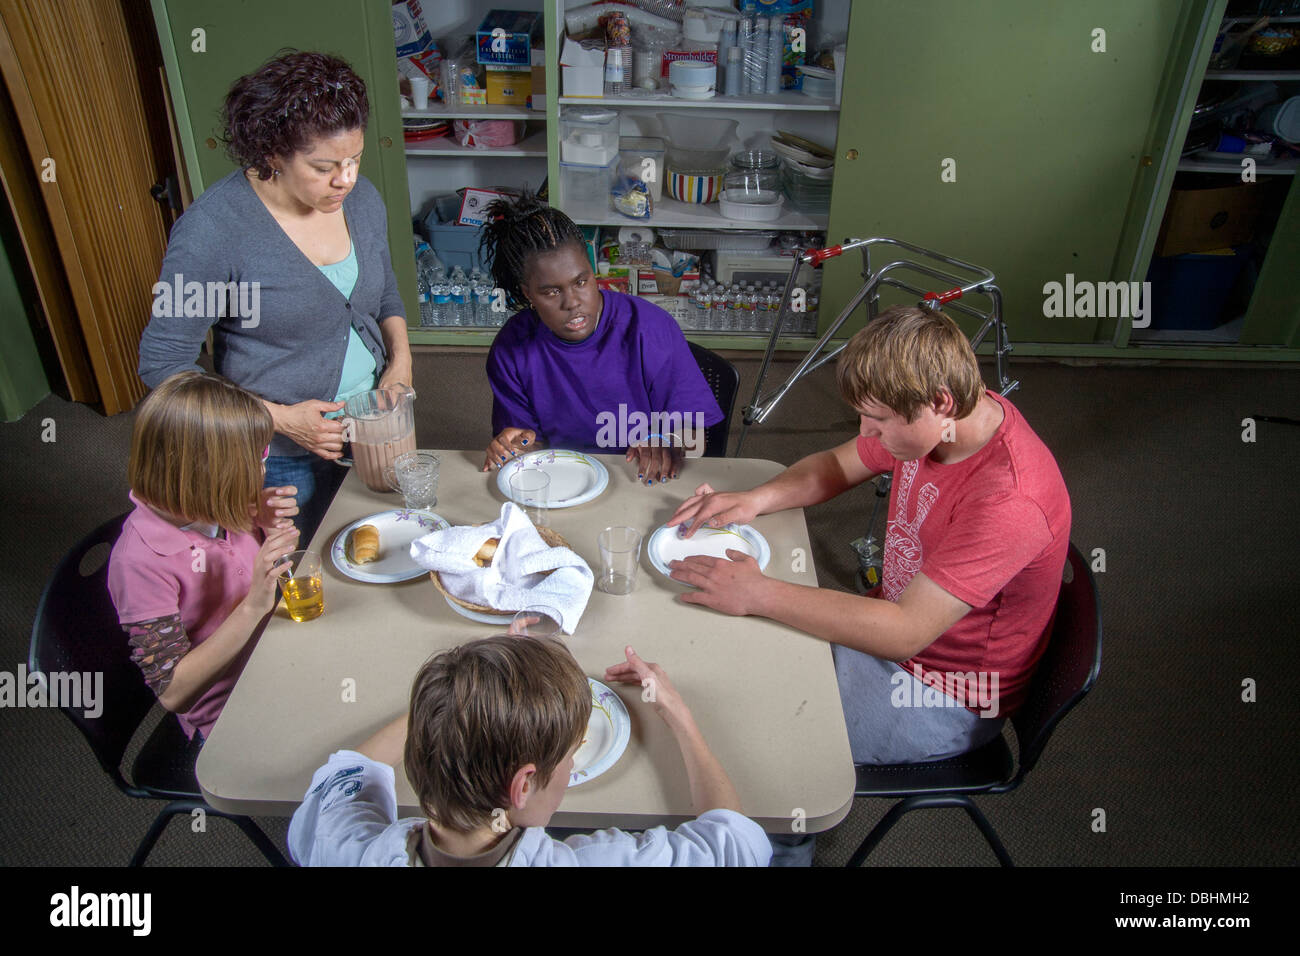 Un maestro se une a sus estudiantes ciegos y discapacitados alimentos de muestreo que hicieron en una clase de cocina y de cocción Foto de stock